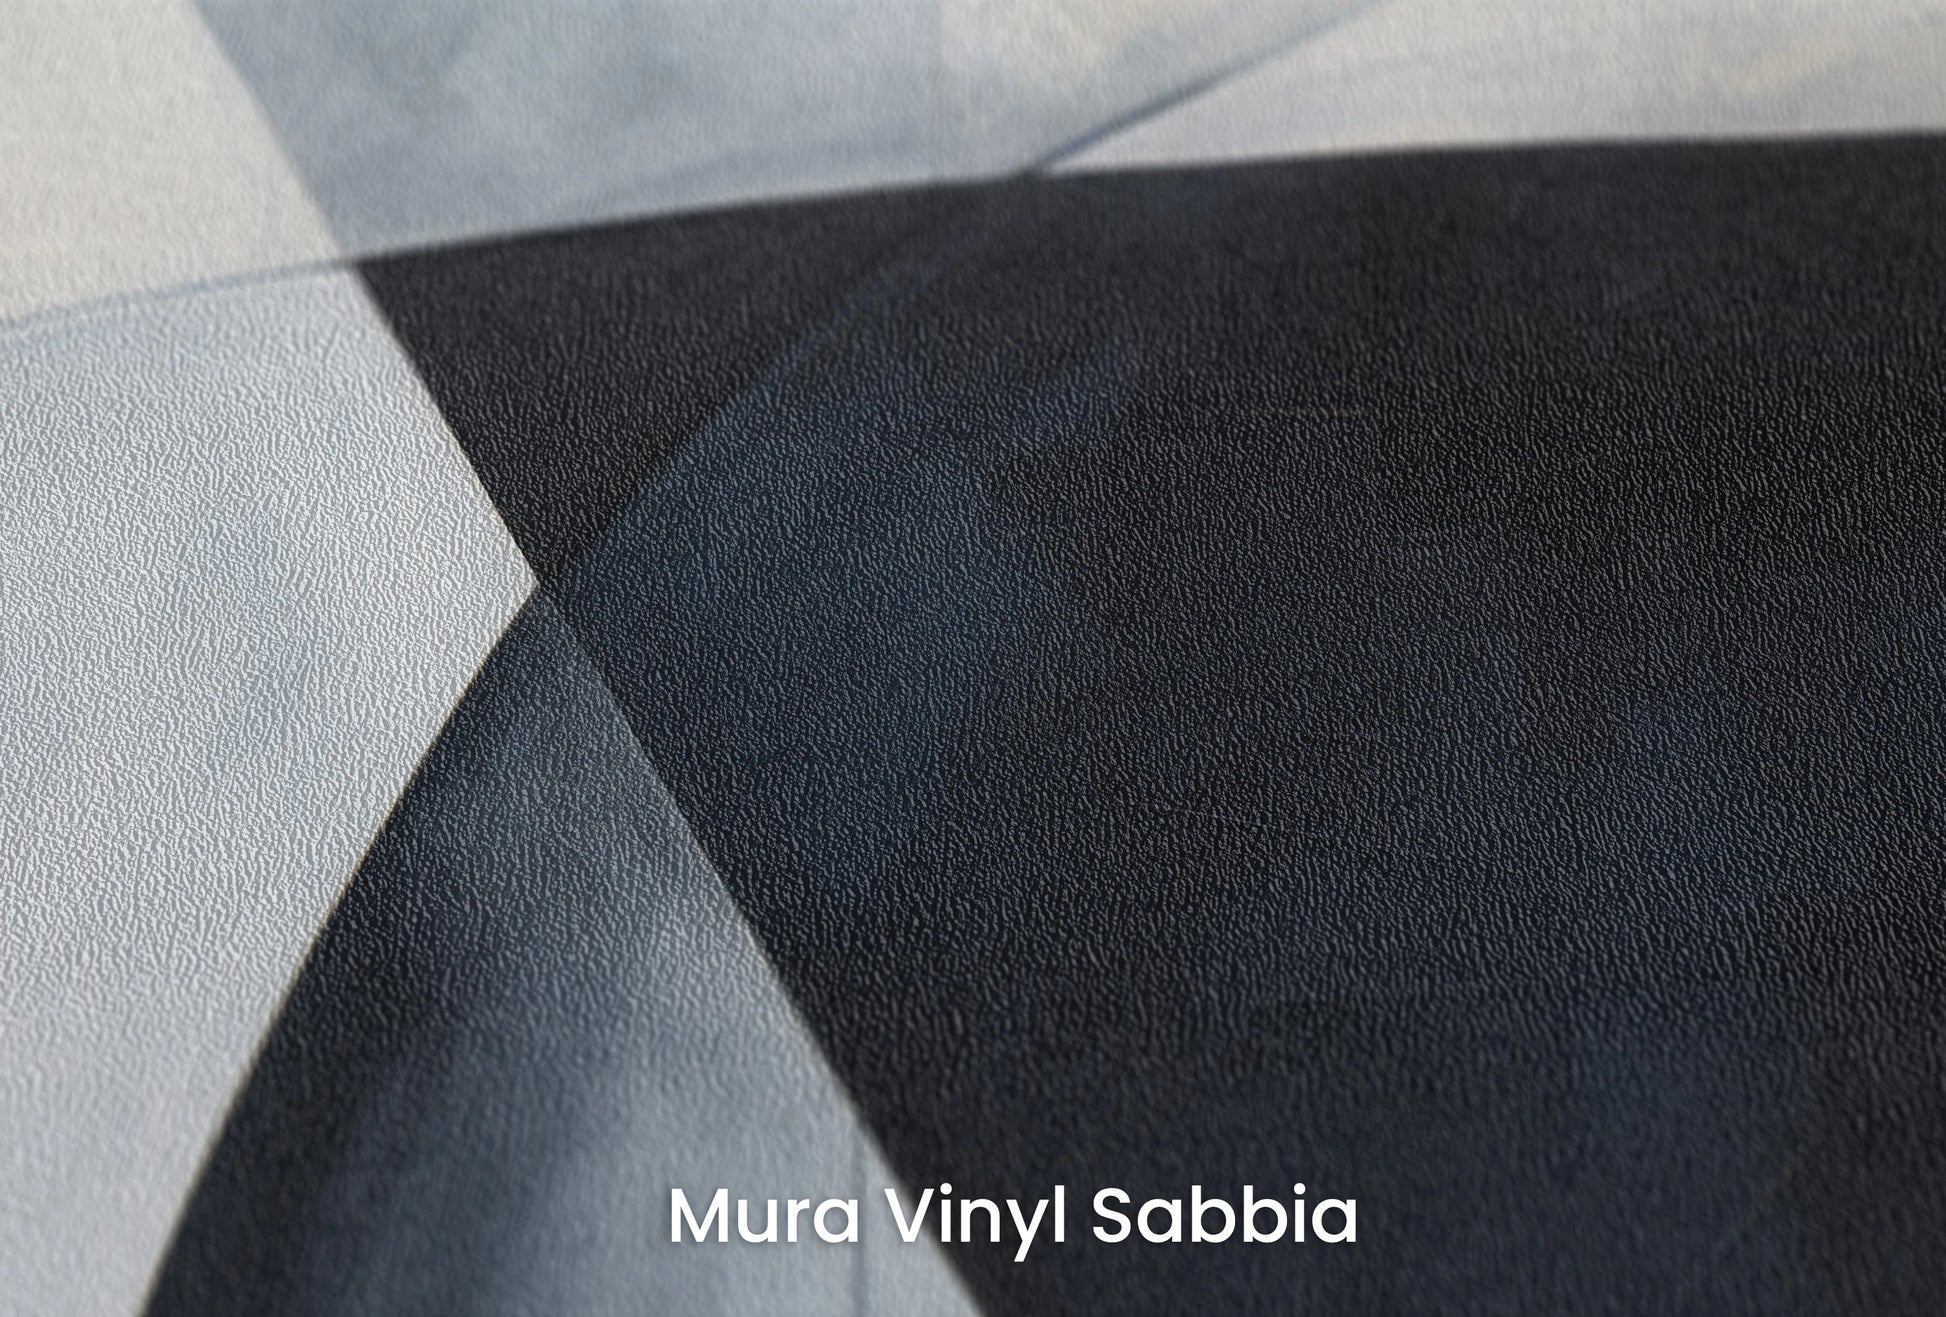 Zbliżenie na artystyczną fototapetę o nazwie Abstract Curves na podłożu Mura Vinyl Sabbia struktura grubego ziarna piasku.